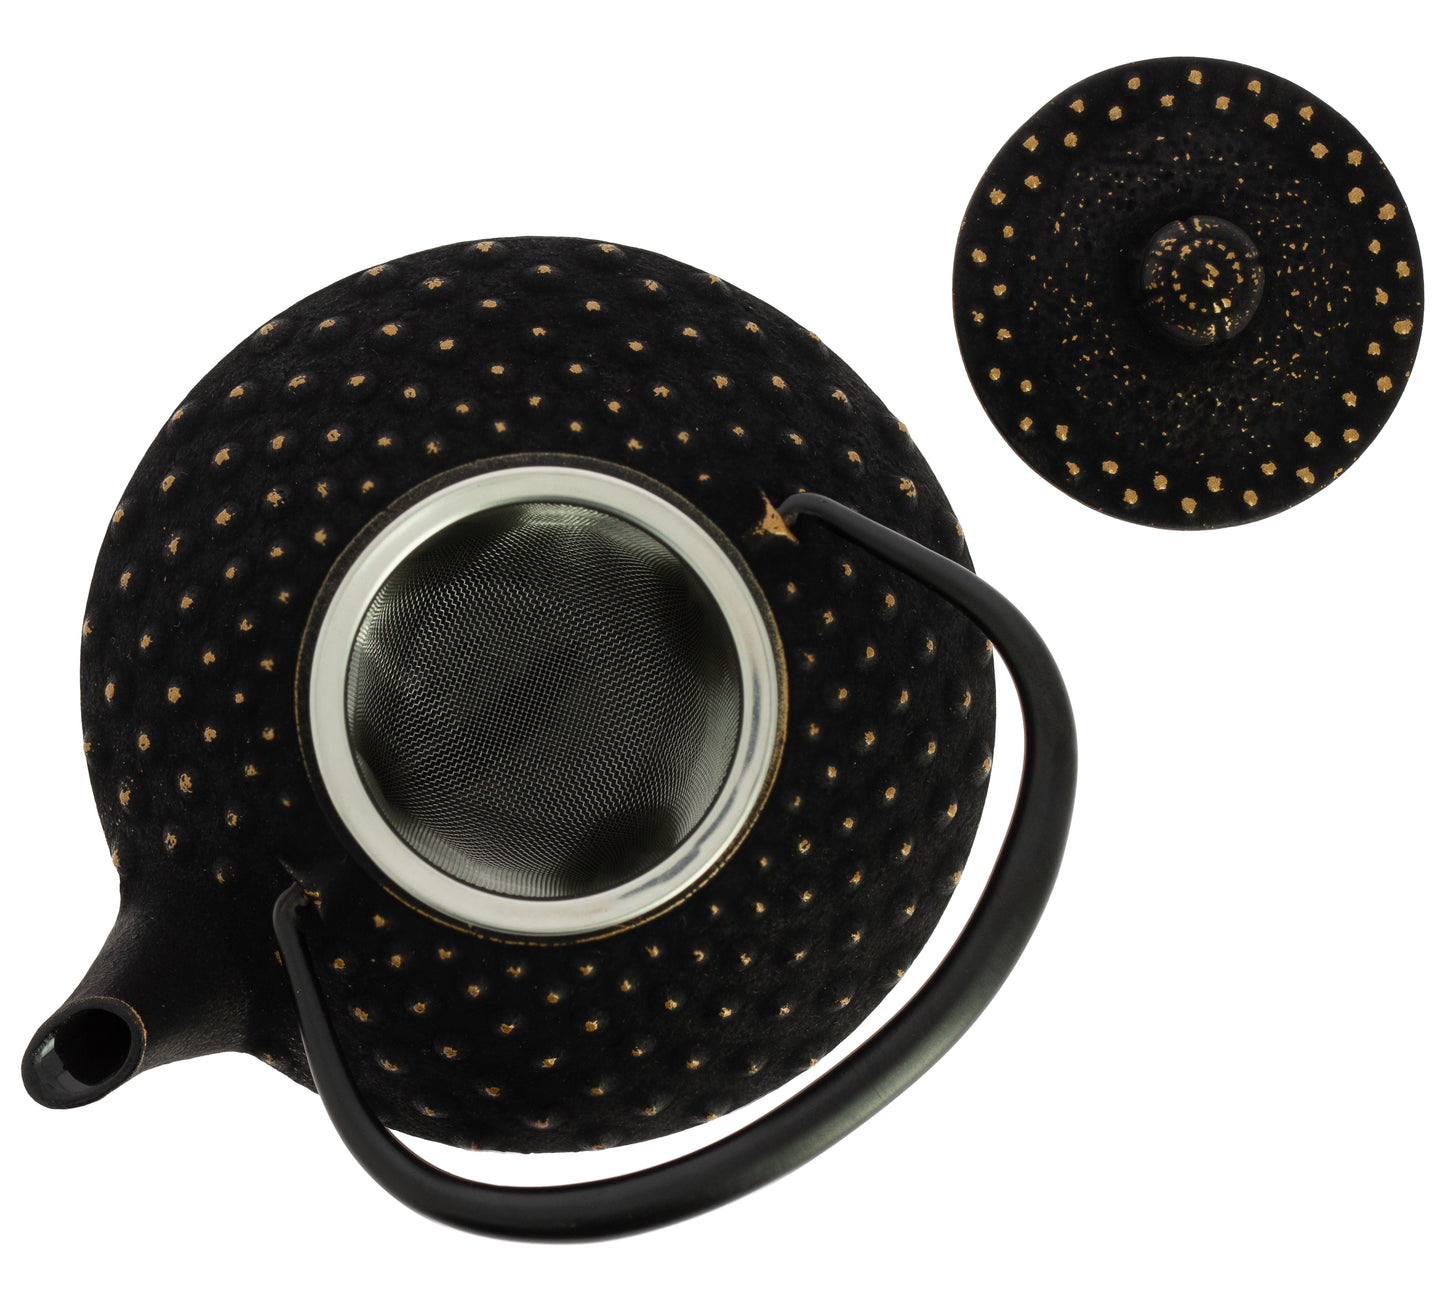 Kanbin Iwachu Teapot - Gold Black, 320 ml